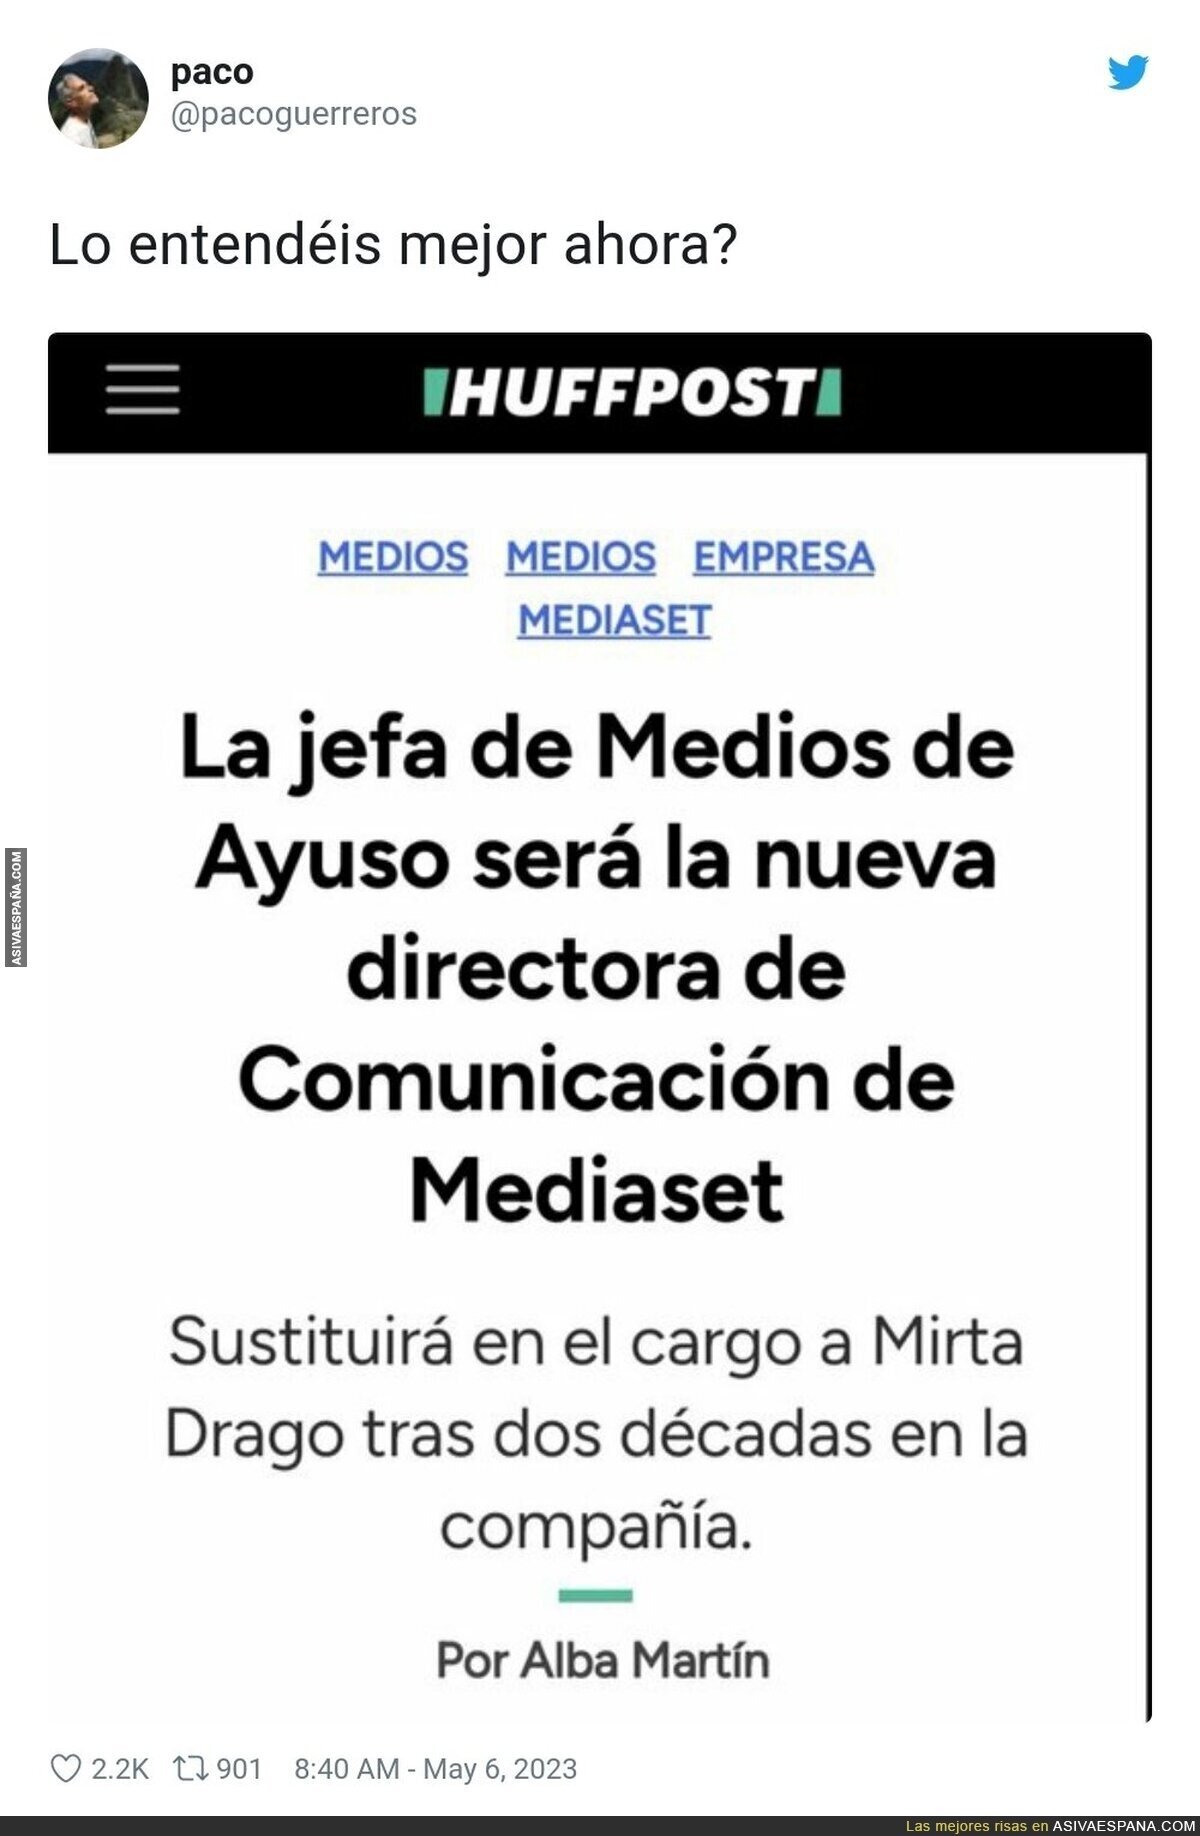 Está todo bien atado en Mediaset